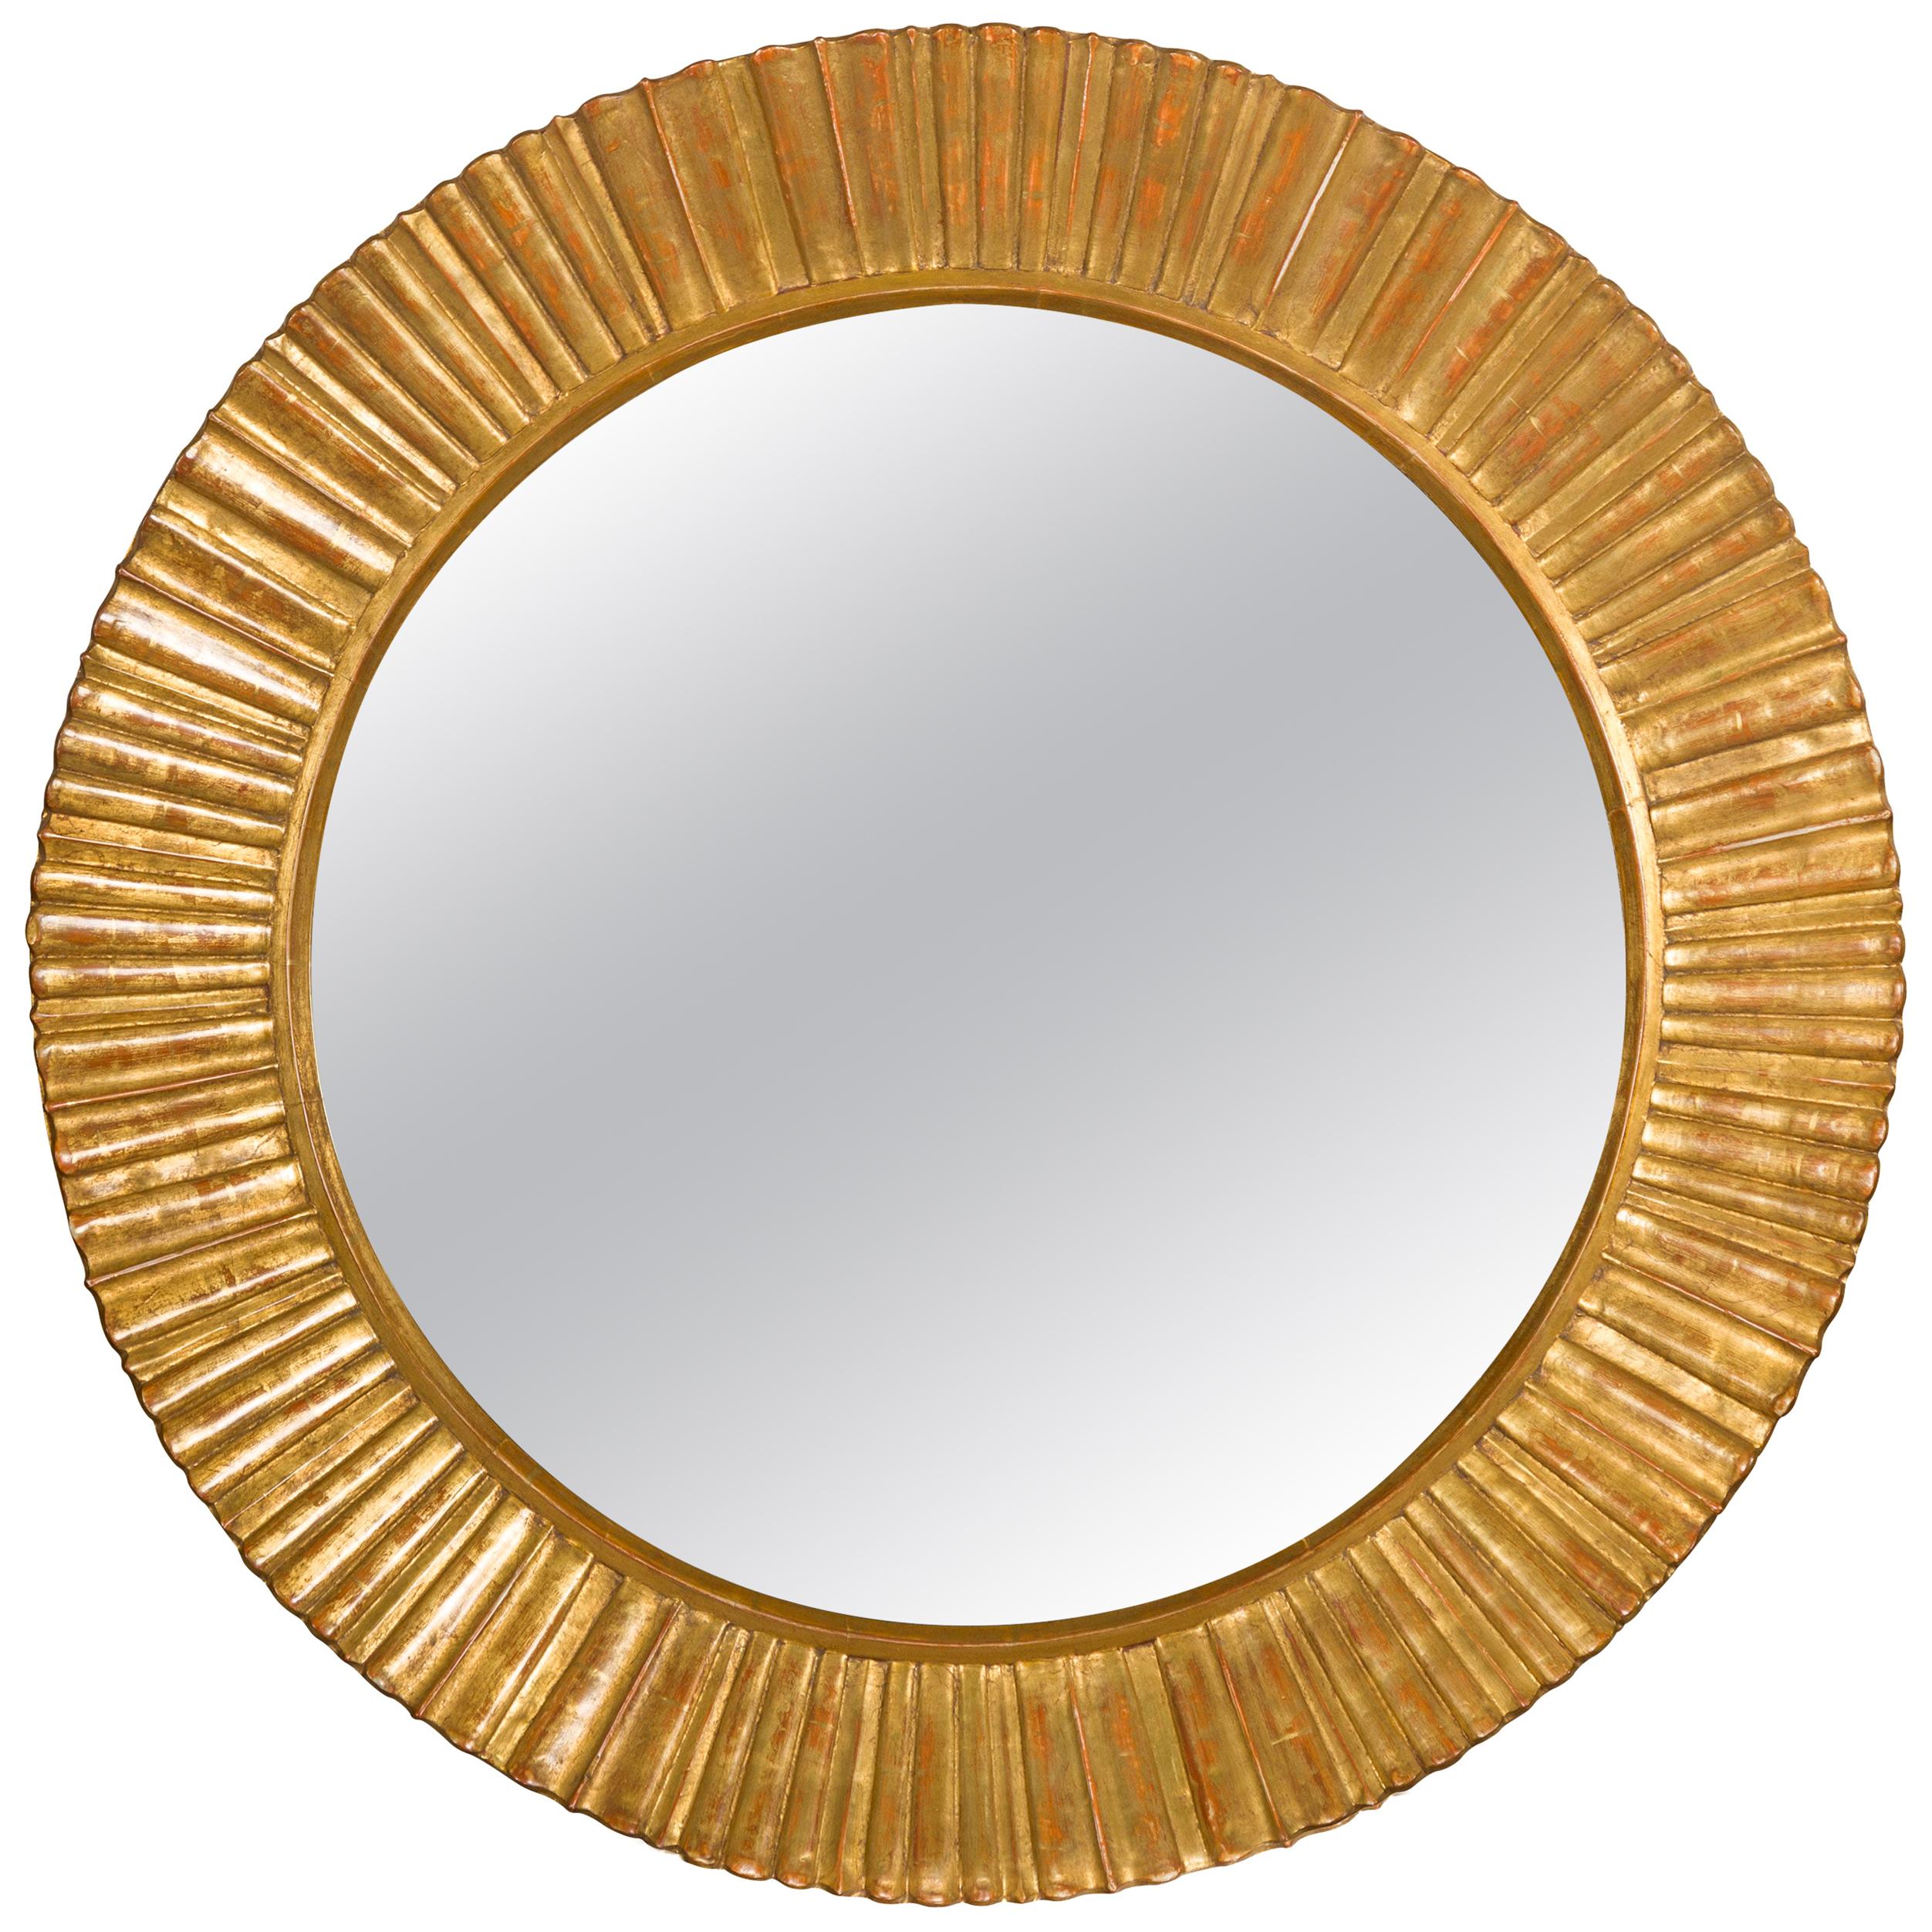 Vieux miroir en bois doré français du milieu du siècle dernier Sunburst avec motifs rayonnants